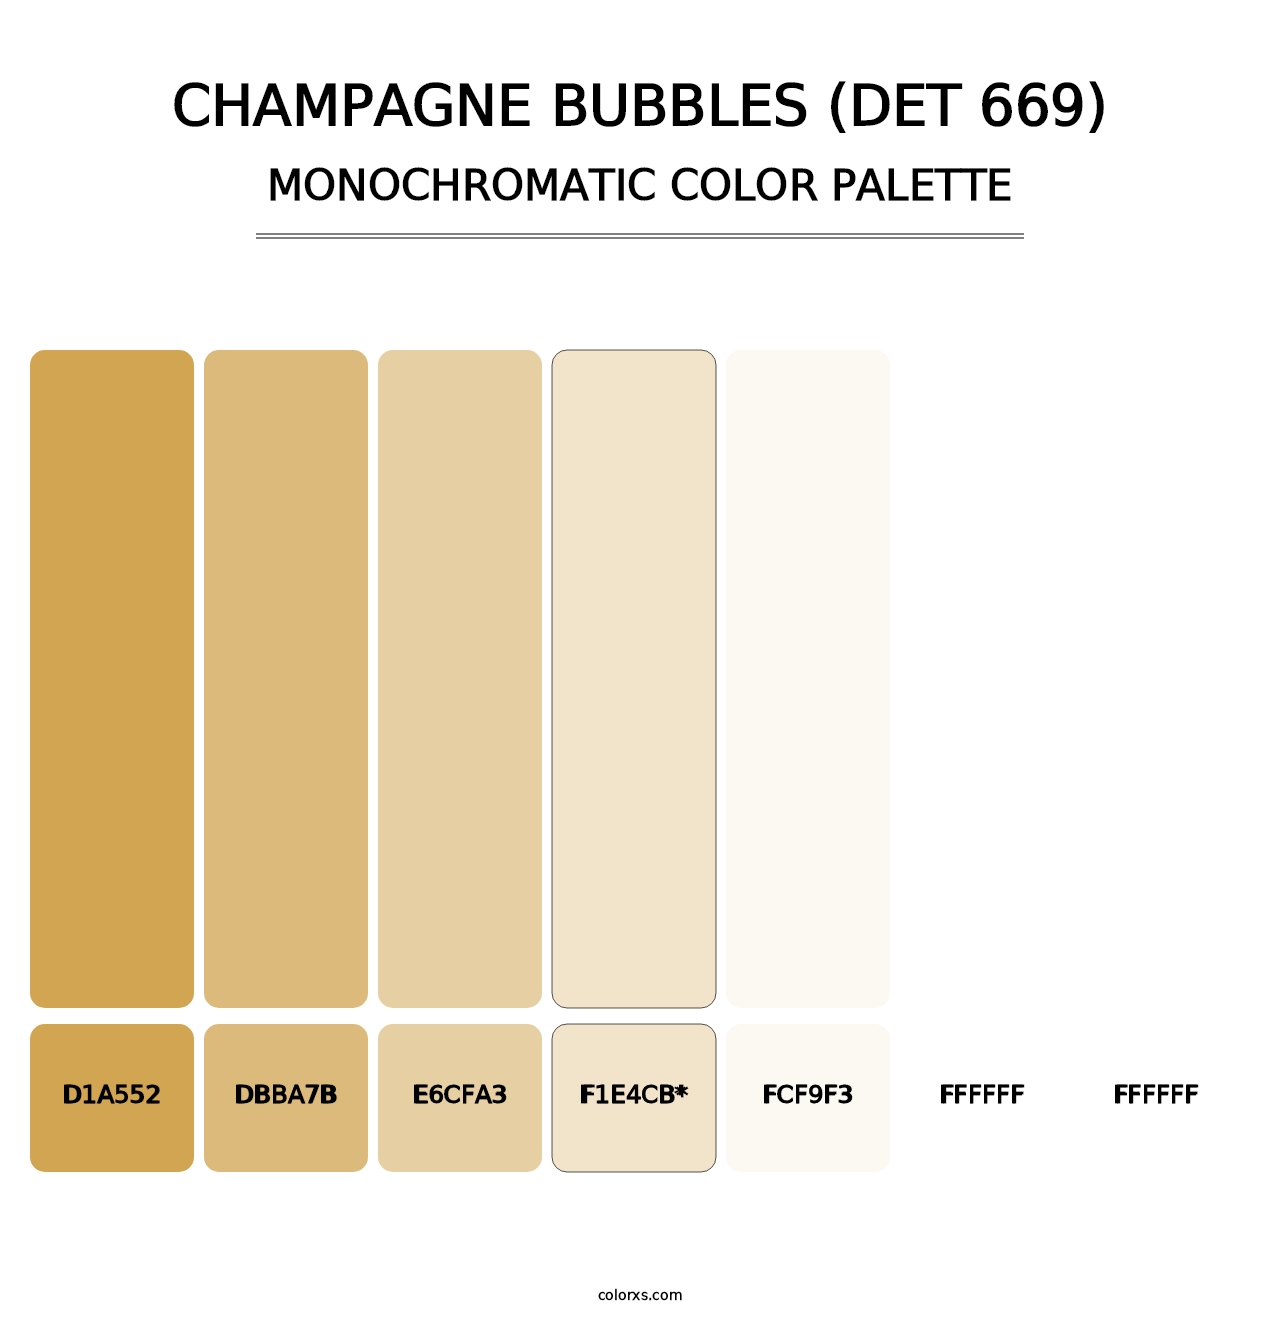 Champagne Bubbles (DET 669) - Monochromatic Color Palette